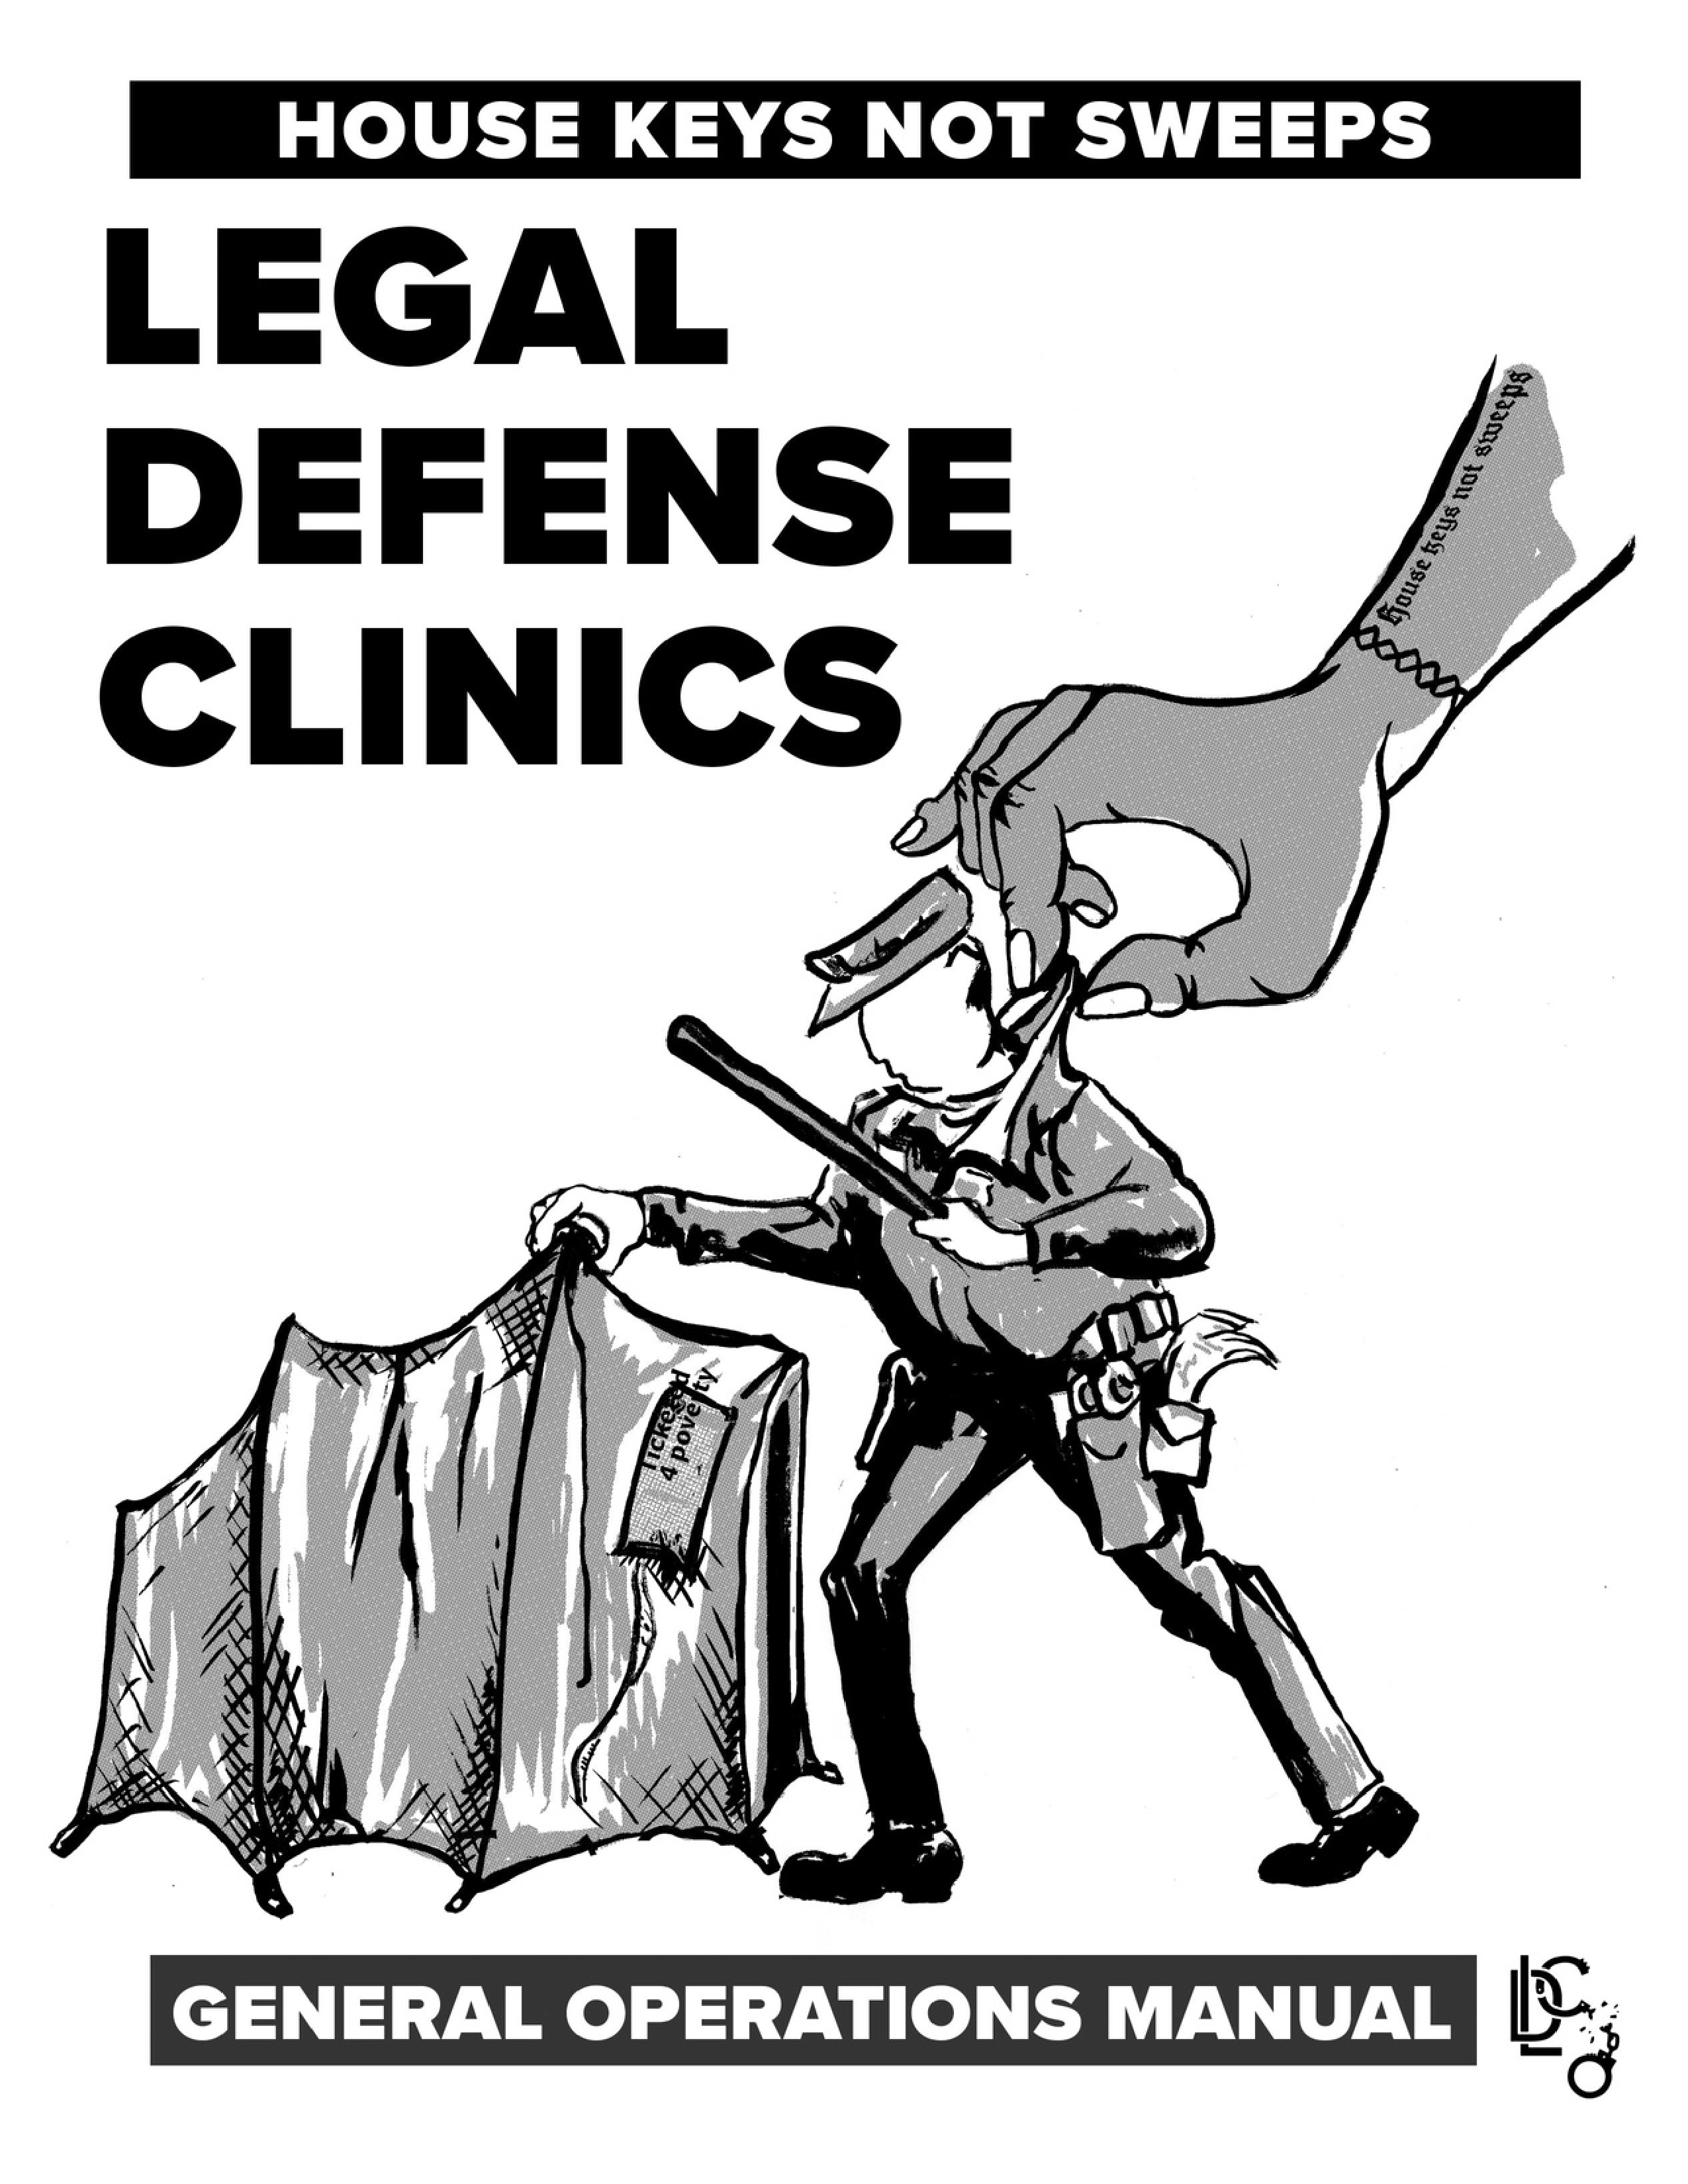 Legal Defense Clinics General Operations Manual B & W